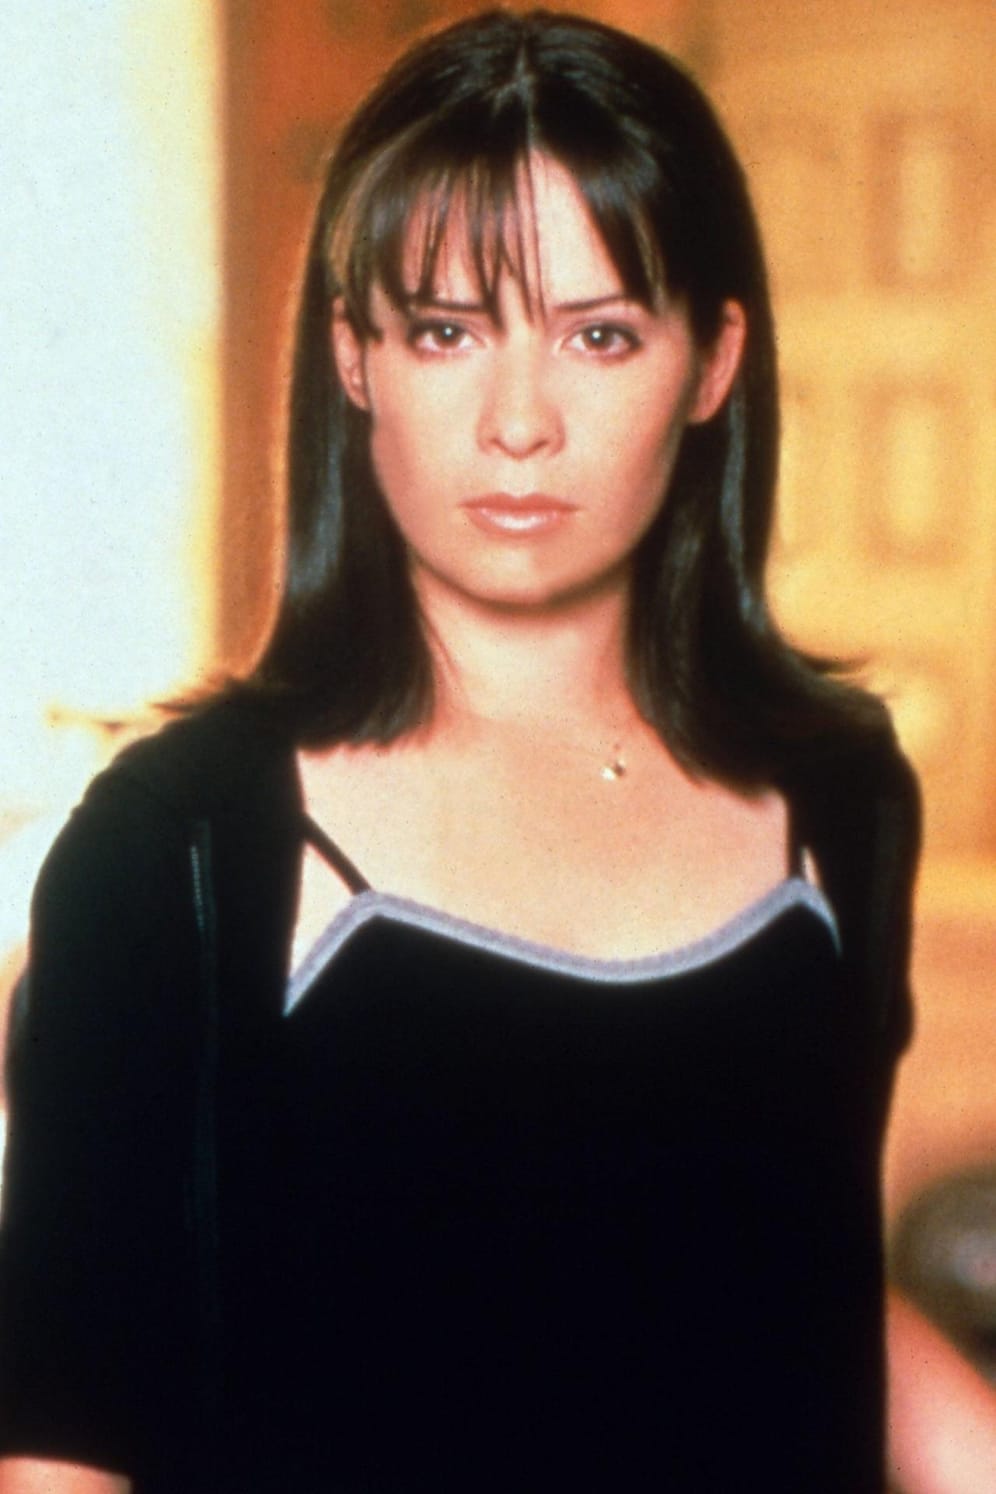 Holly Marie Combs spielte Piper Halliwell. Bis zum Aus von "Charmed" stand sie für die Serie vor der Kamera.